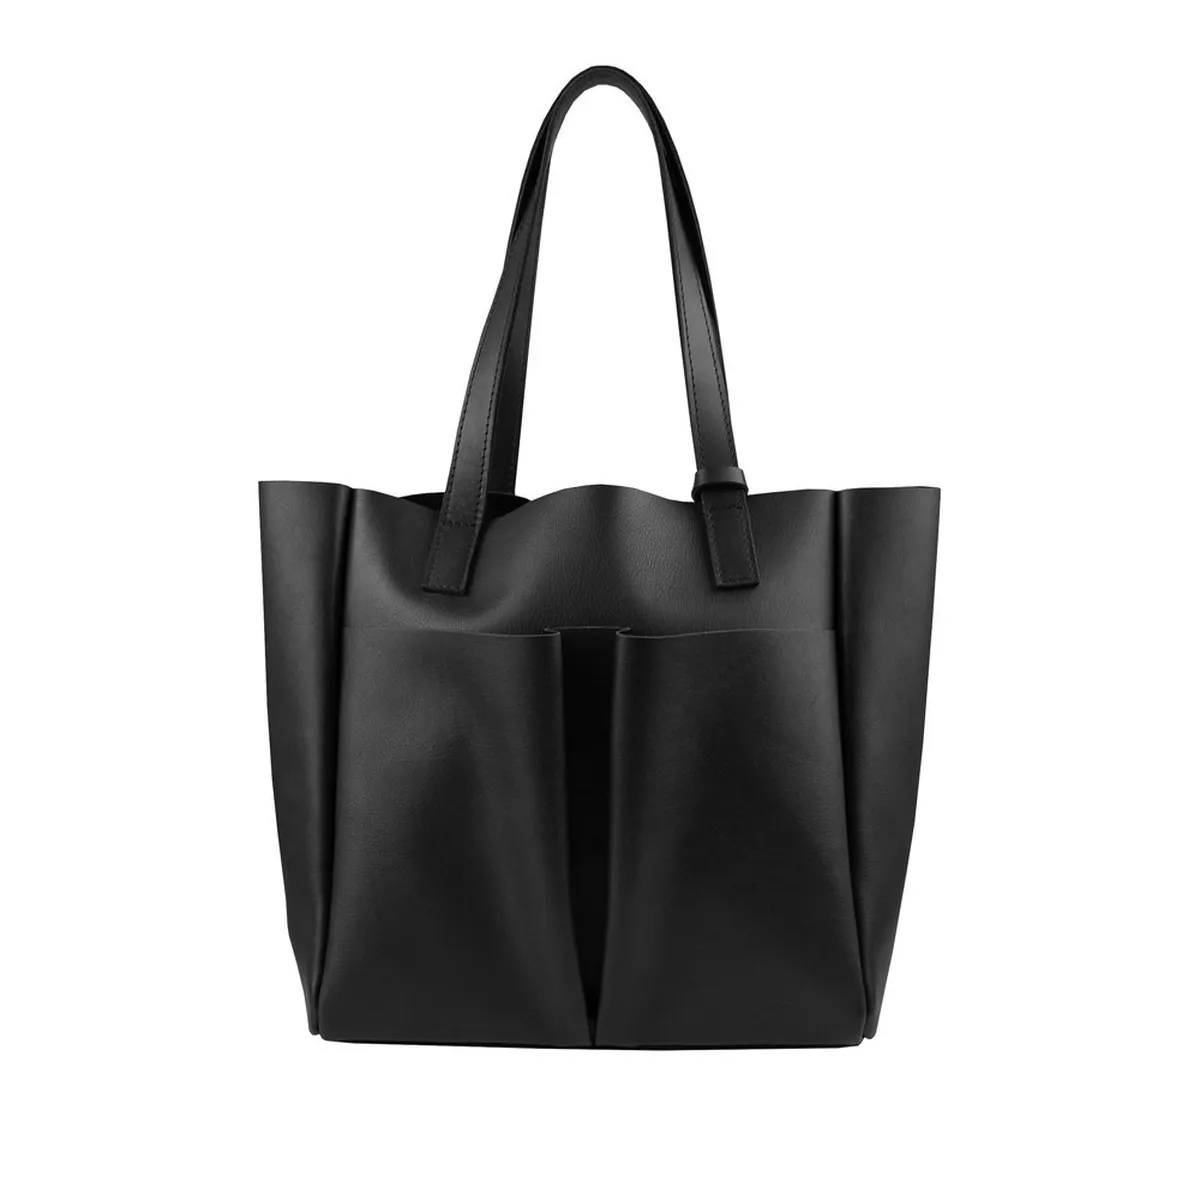 Классическая черная сумка-тоут (tote bag)